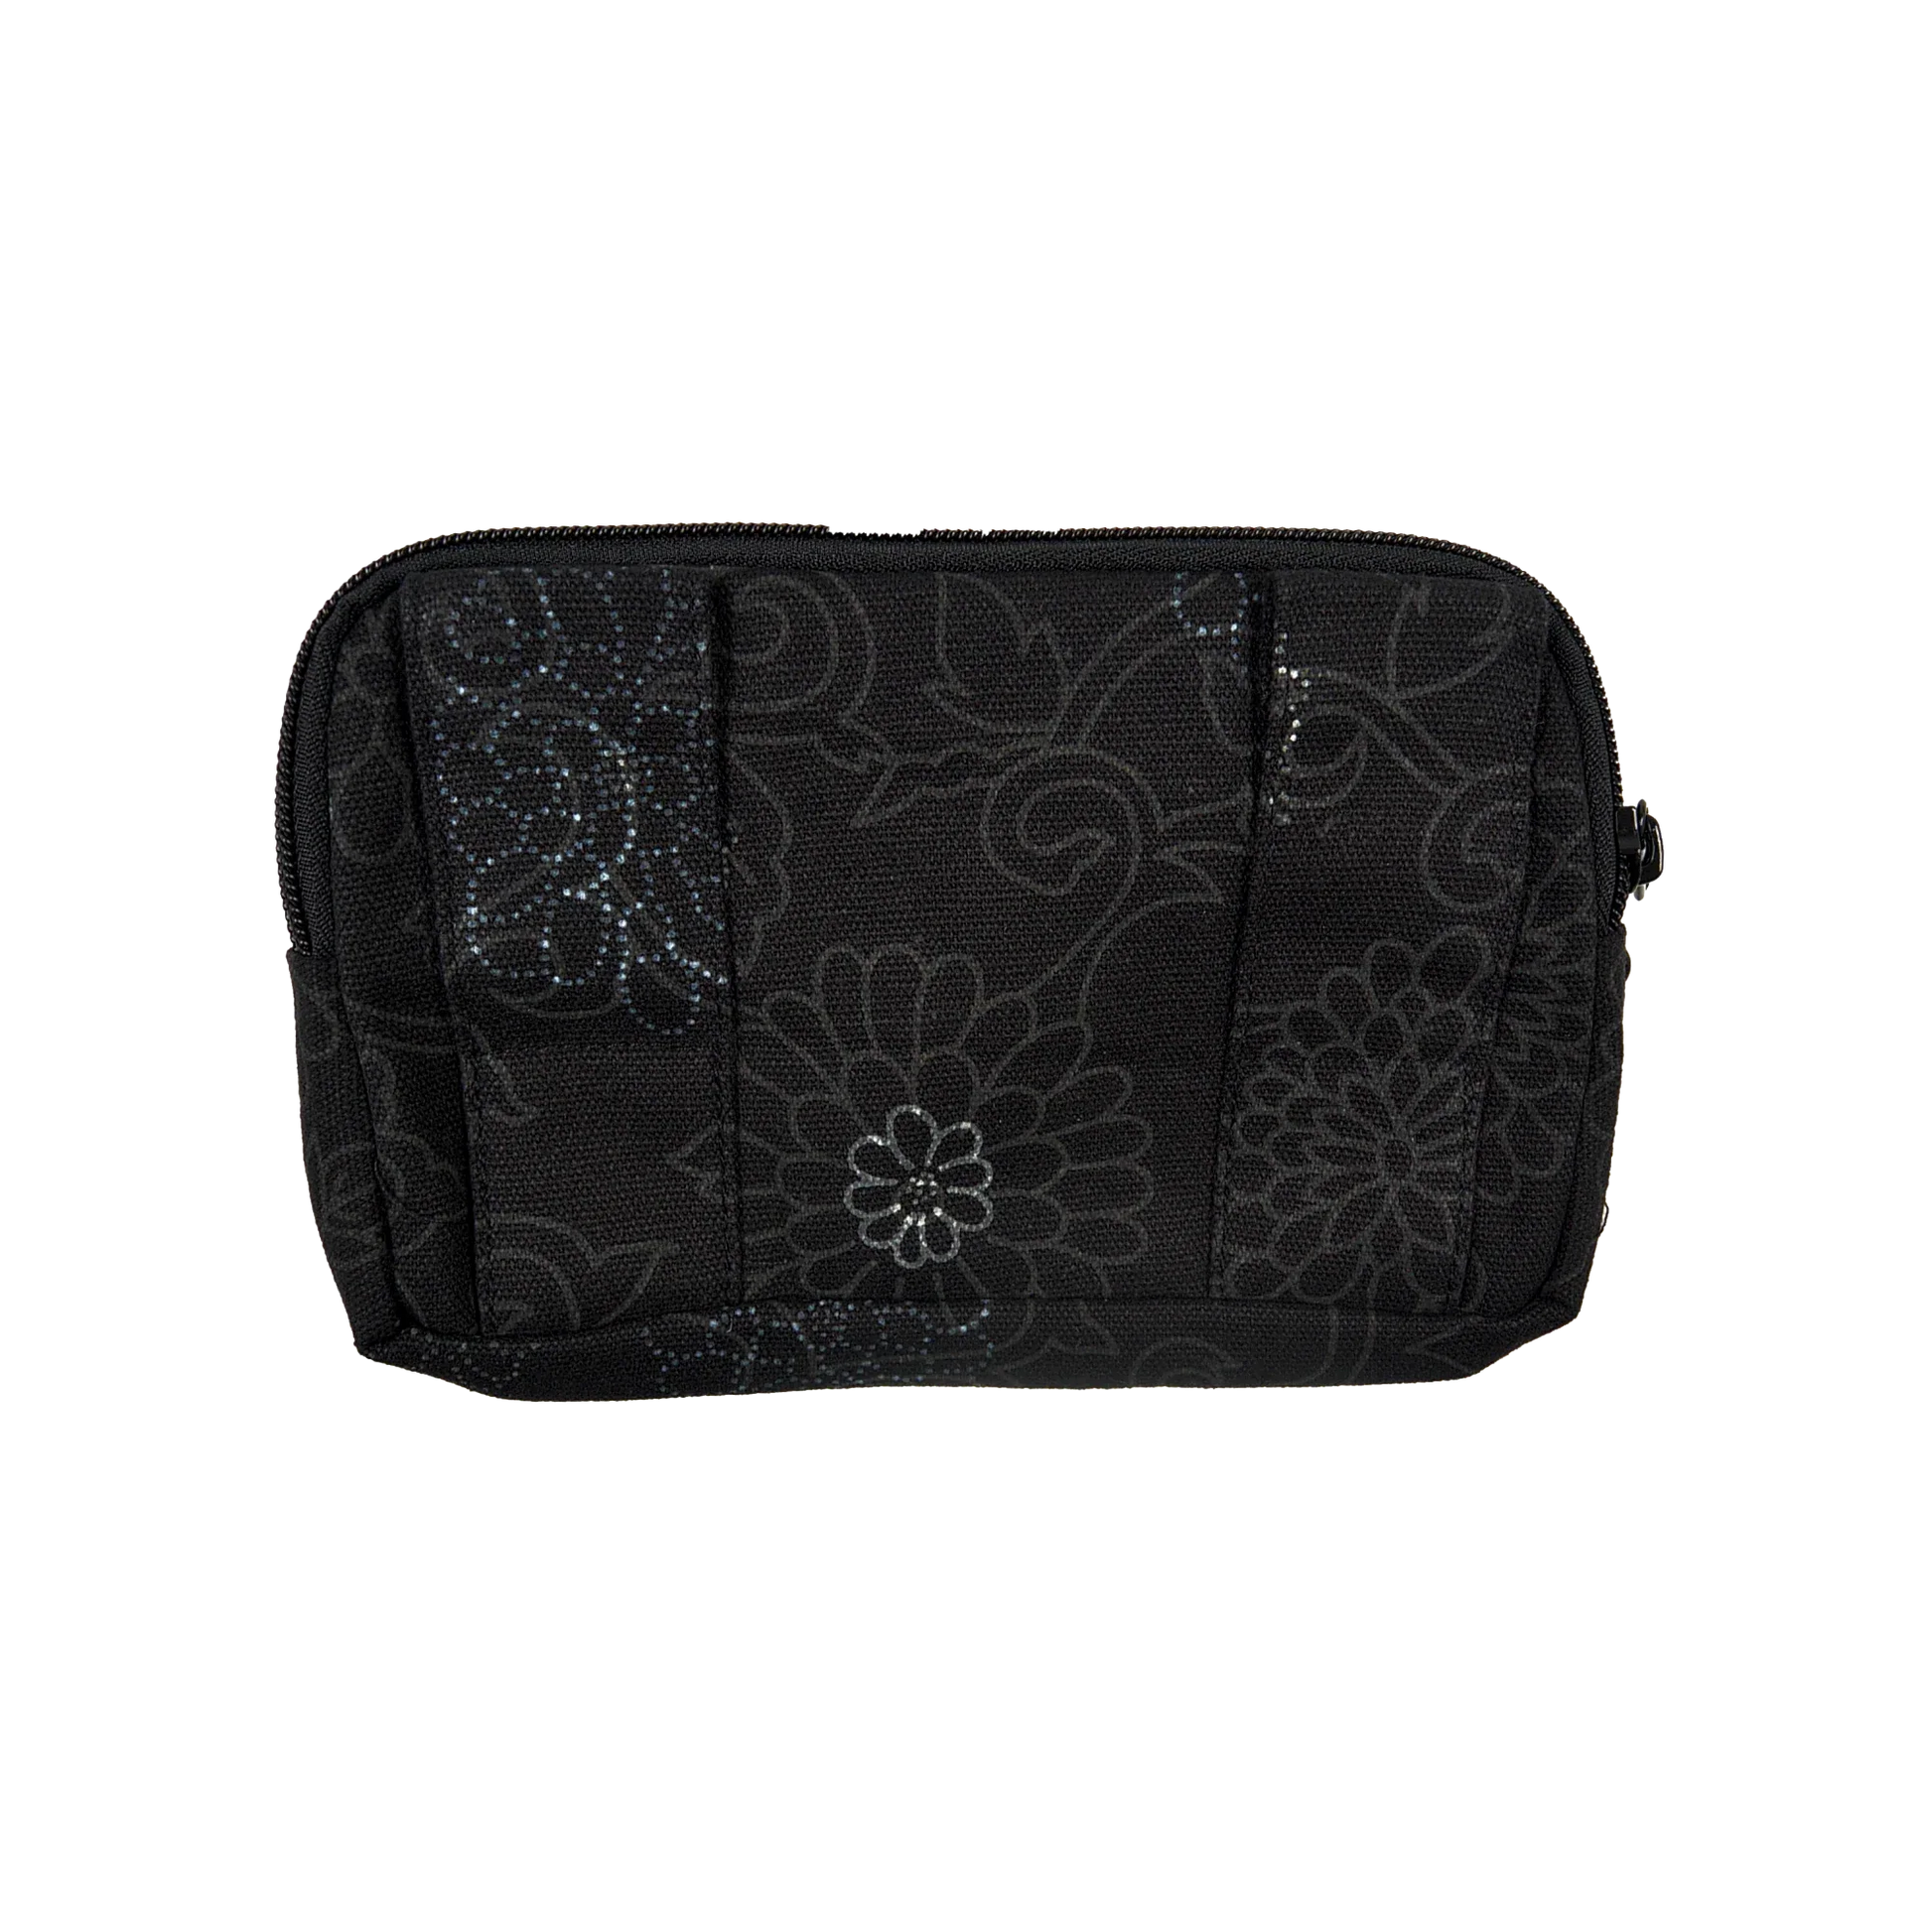 Beuteltsche aus Canvas, schwarz mit floralen Ornamenten. Die Tasche besitzt Reisverschlussfächer und ein Einsteckfach vorne und kann mit zwei Gürtelschlaufen auf der Rückseite an jeden Gürtel angebracht werden.